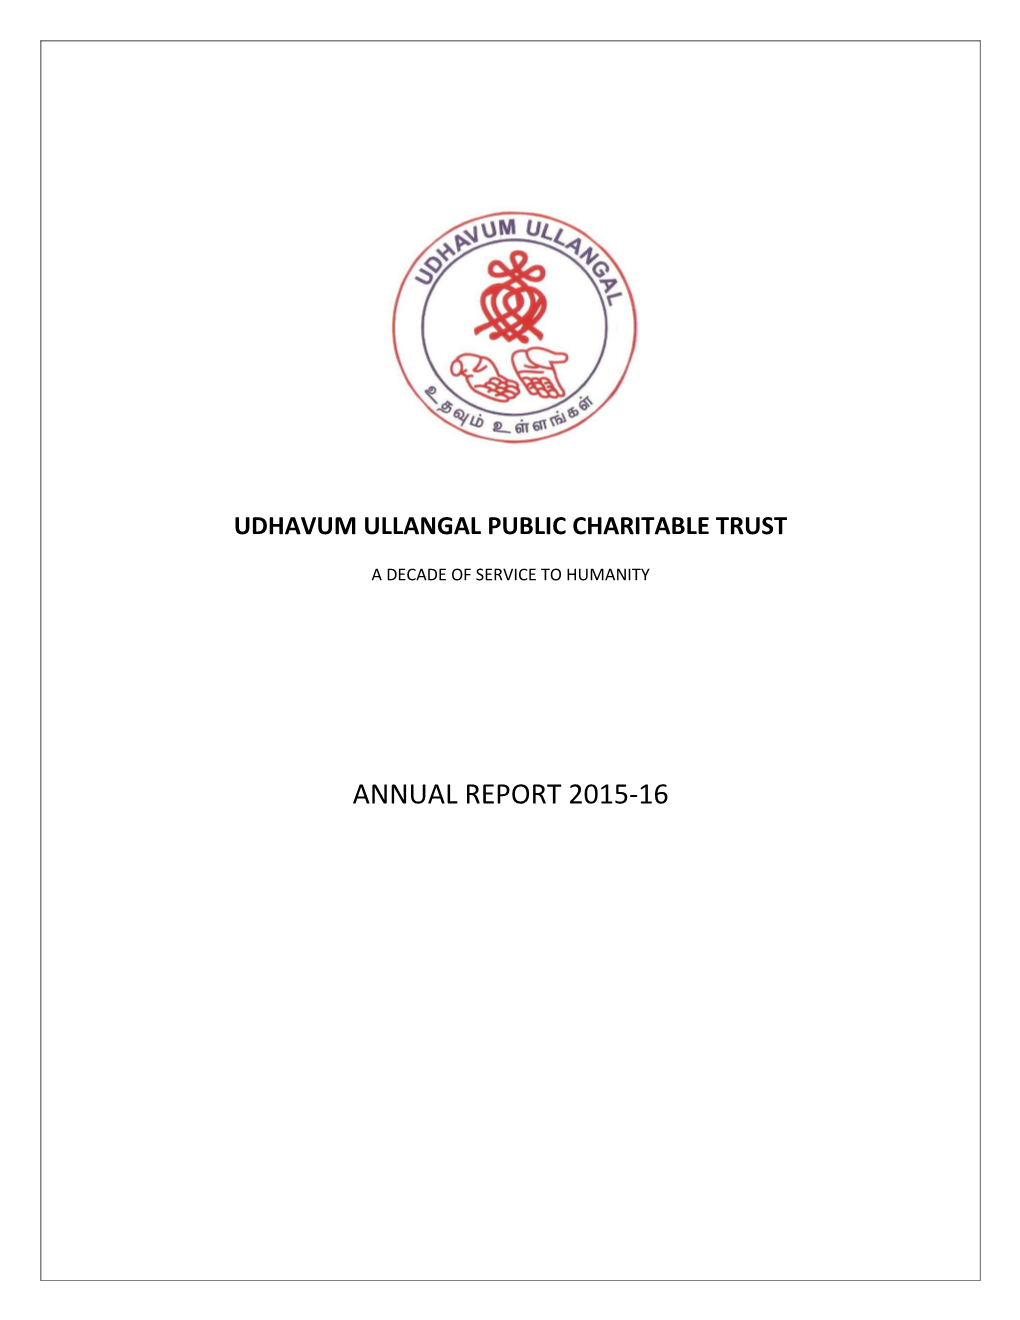 Udhavum Ullangal Public Charitable Trust